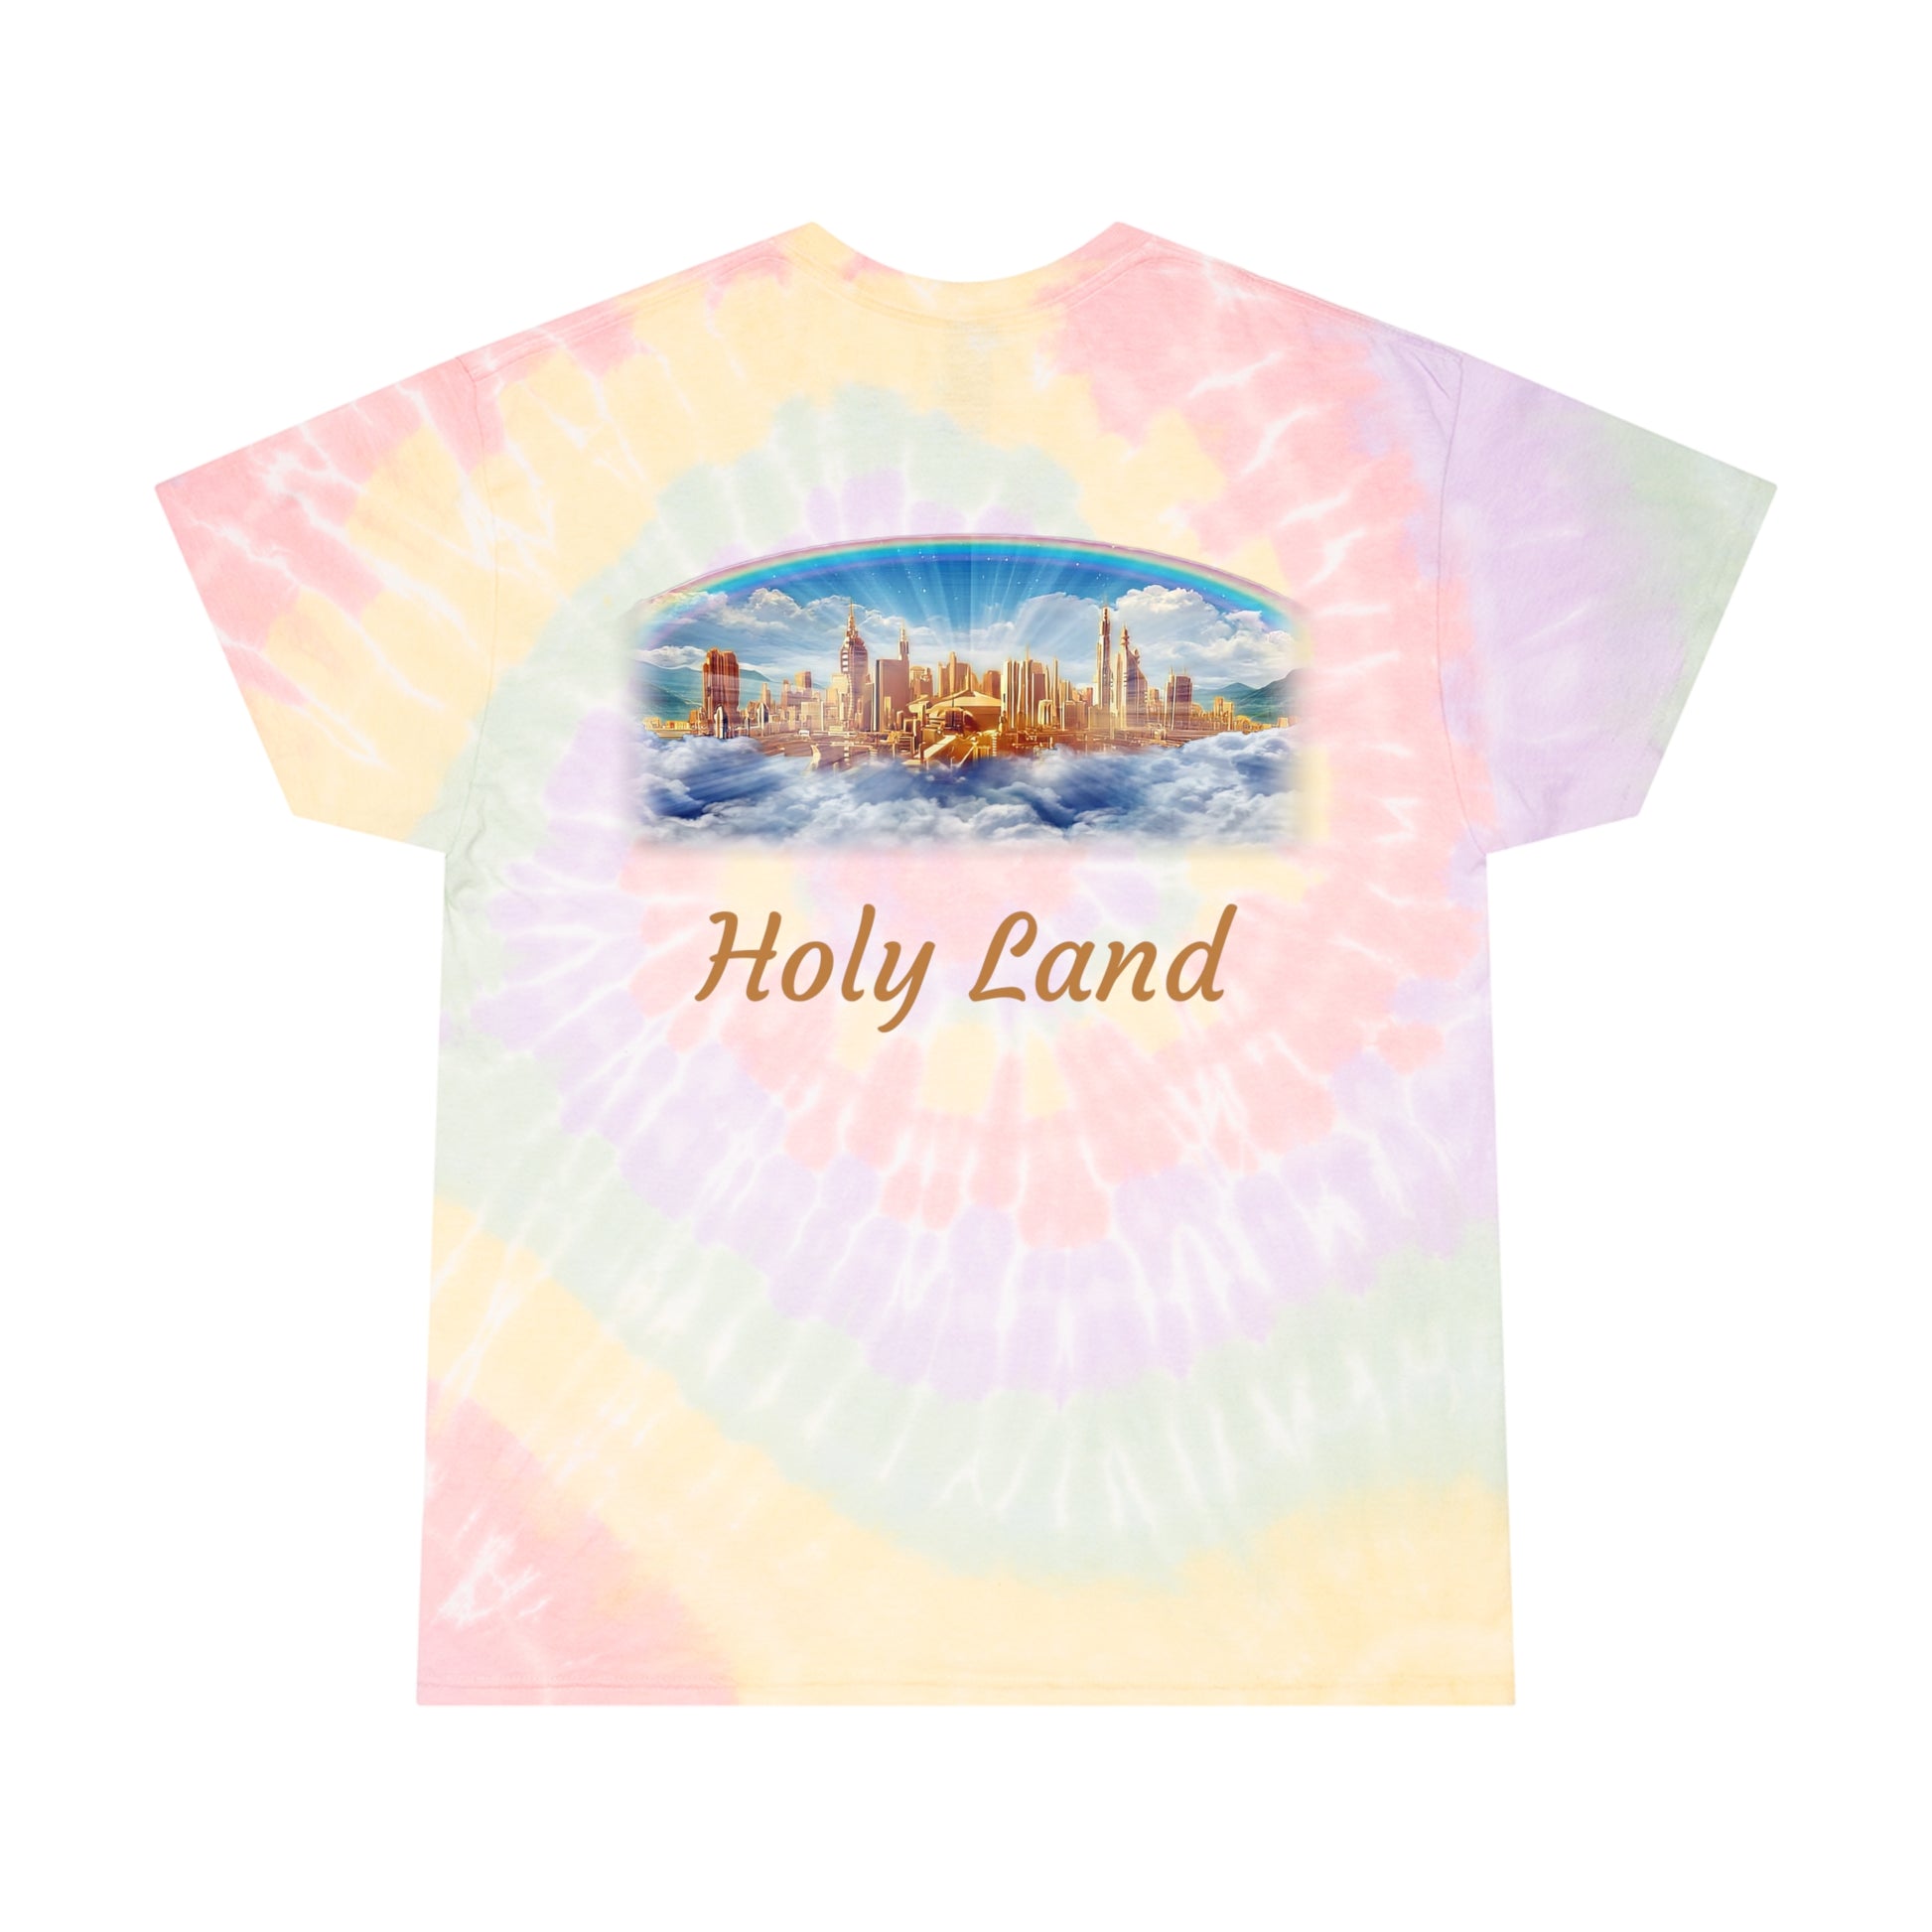 Holy Land